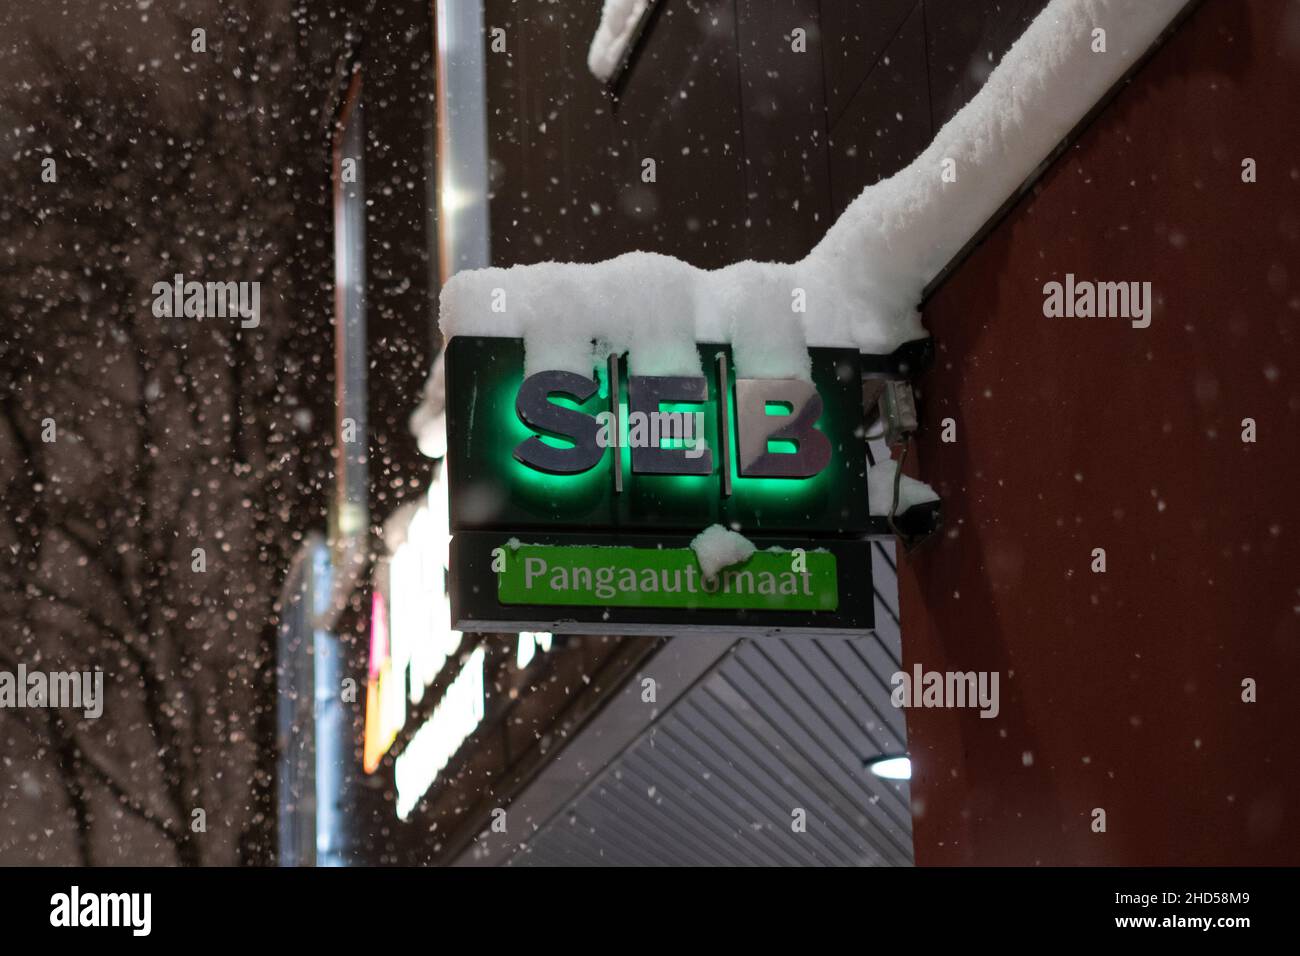 SEB banco logotipo en Tallin durante la nieve de invierno. Sistema bancario europeo. Foto de stock